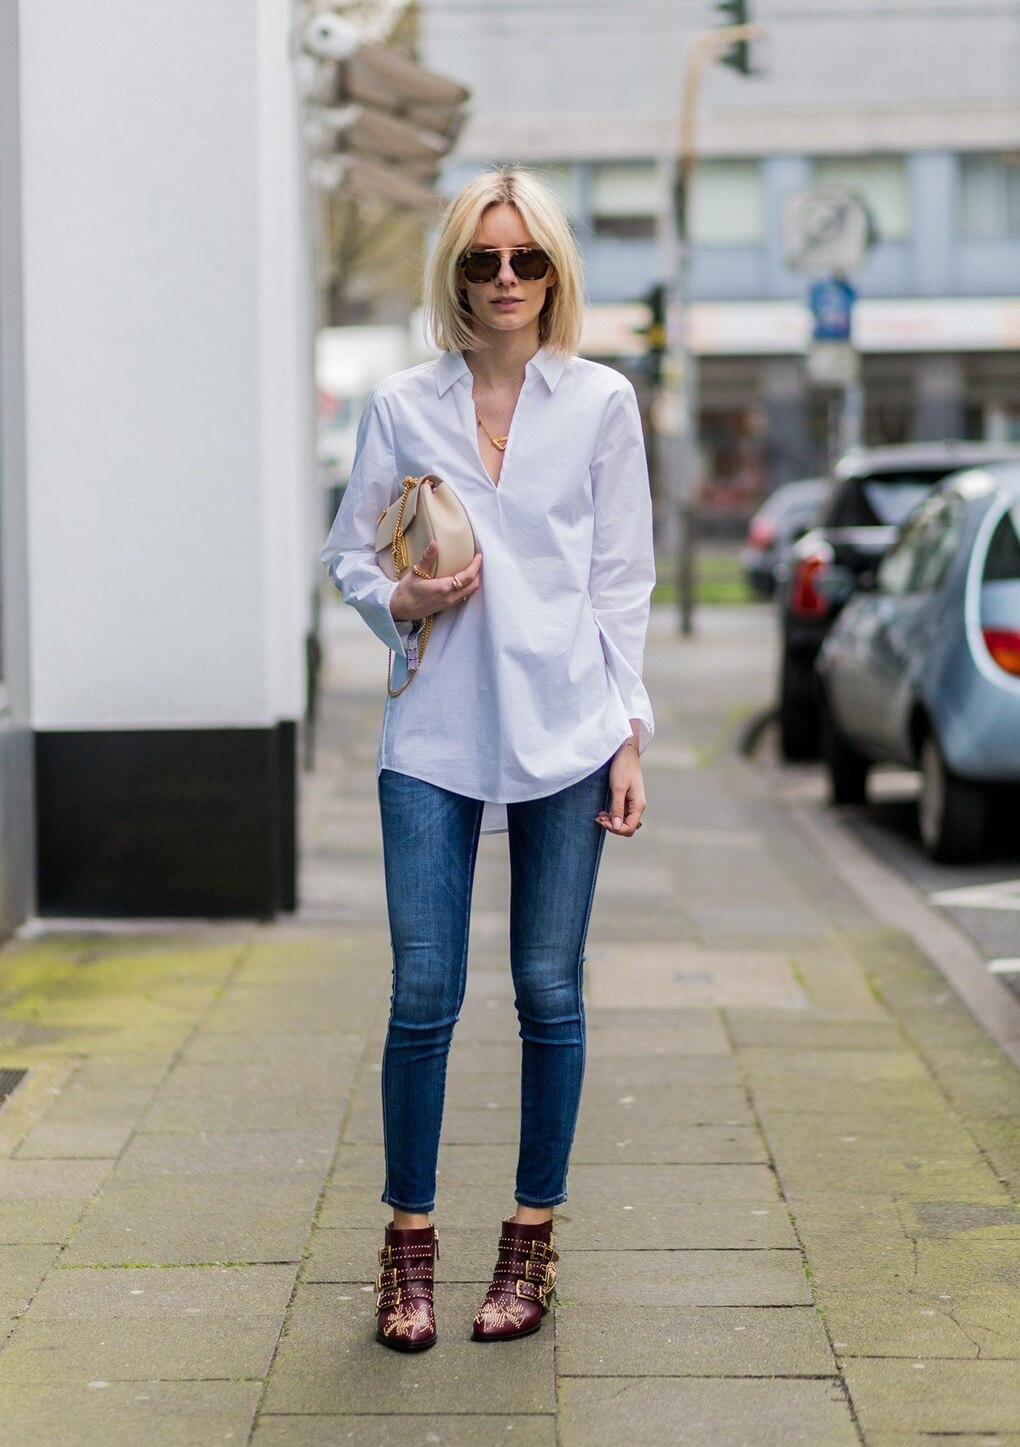 Bí kíp mặc đẹp áo sơ mi trắng và quần jeans xanh - 7